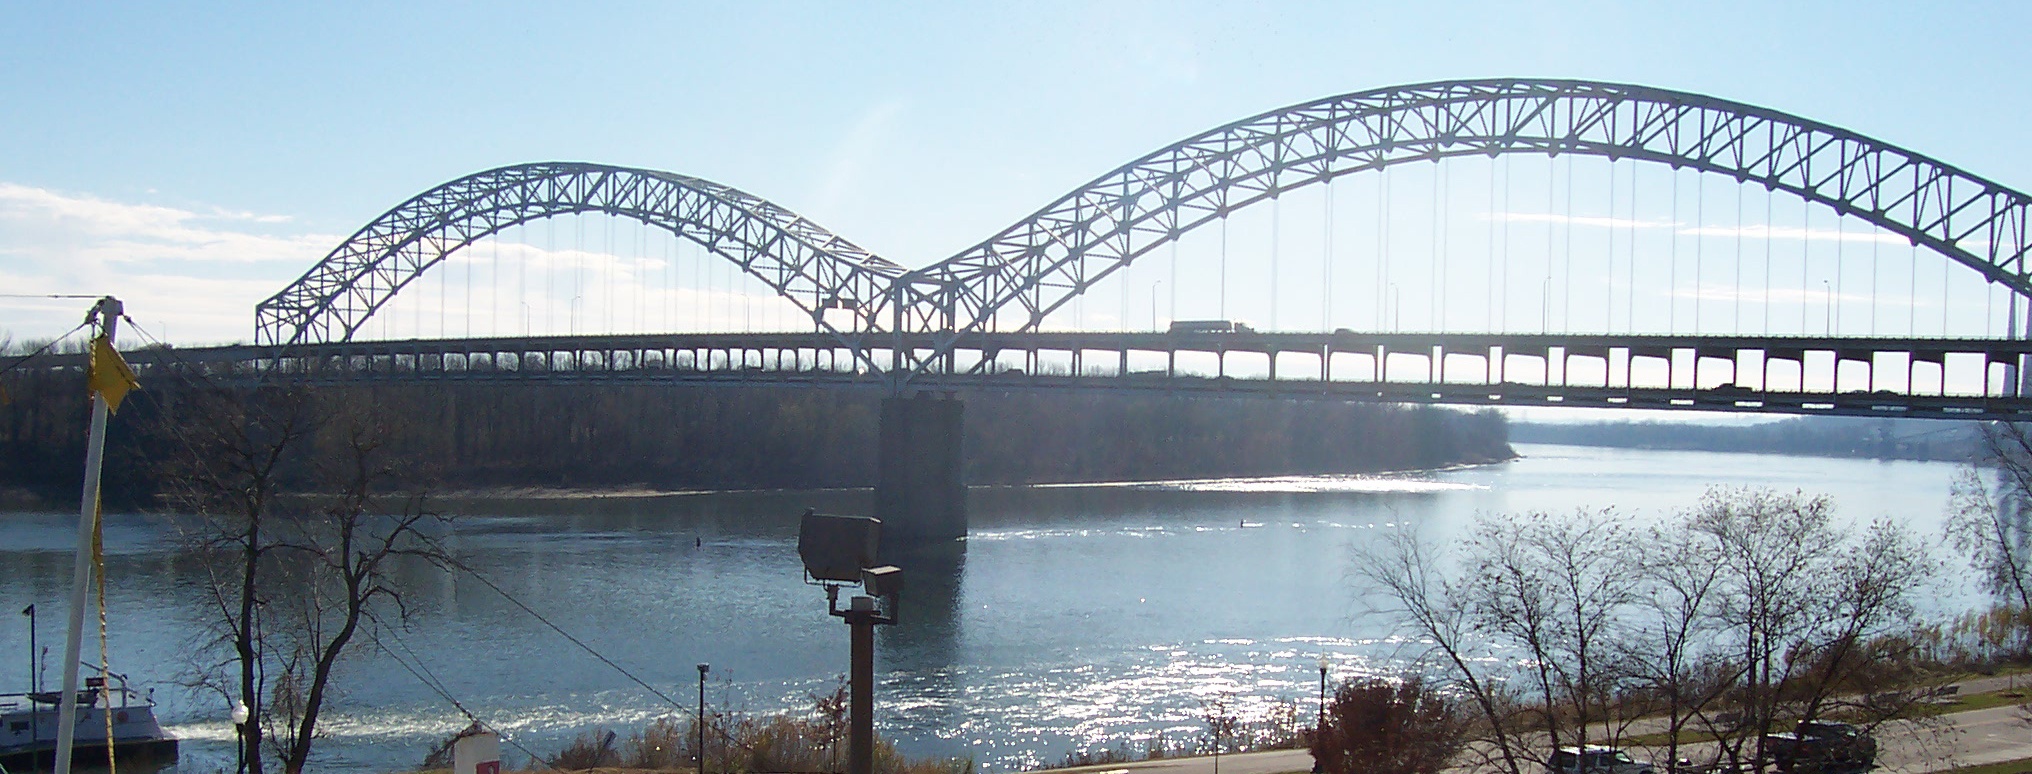 Длинный пролет. Кентукки мост. Нью-Олбани штат Индиана. Река Олбани. Мост через реку Огайо Портсмут.